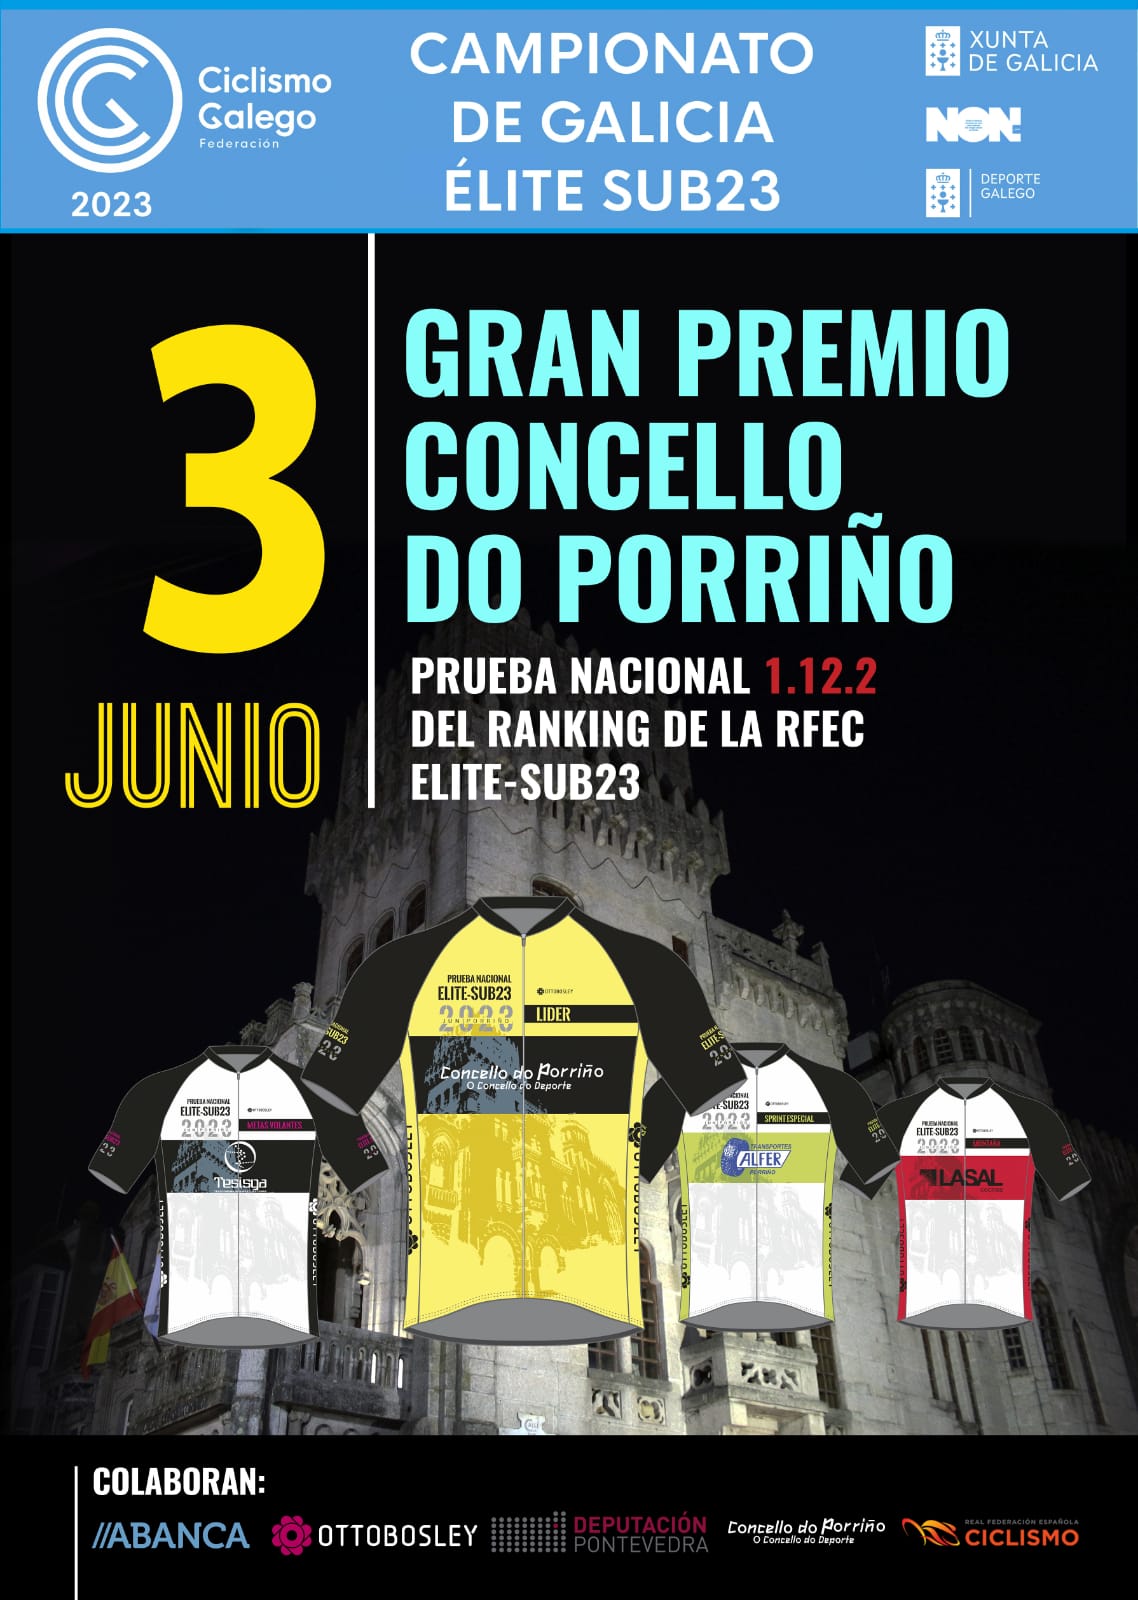 Presentación do Campionato de Galicia Elite-Sub23 - Gran Premio Concello do Porriño